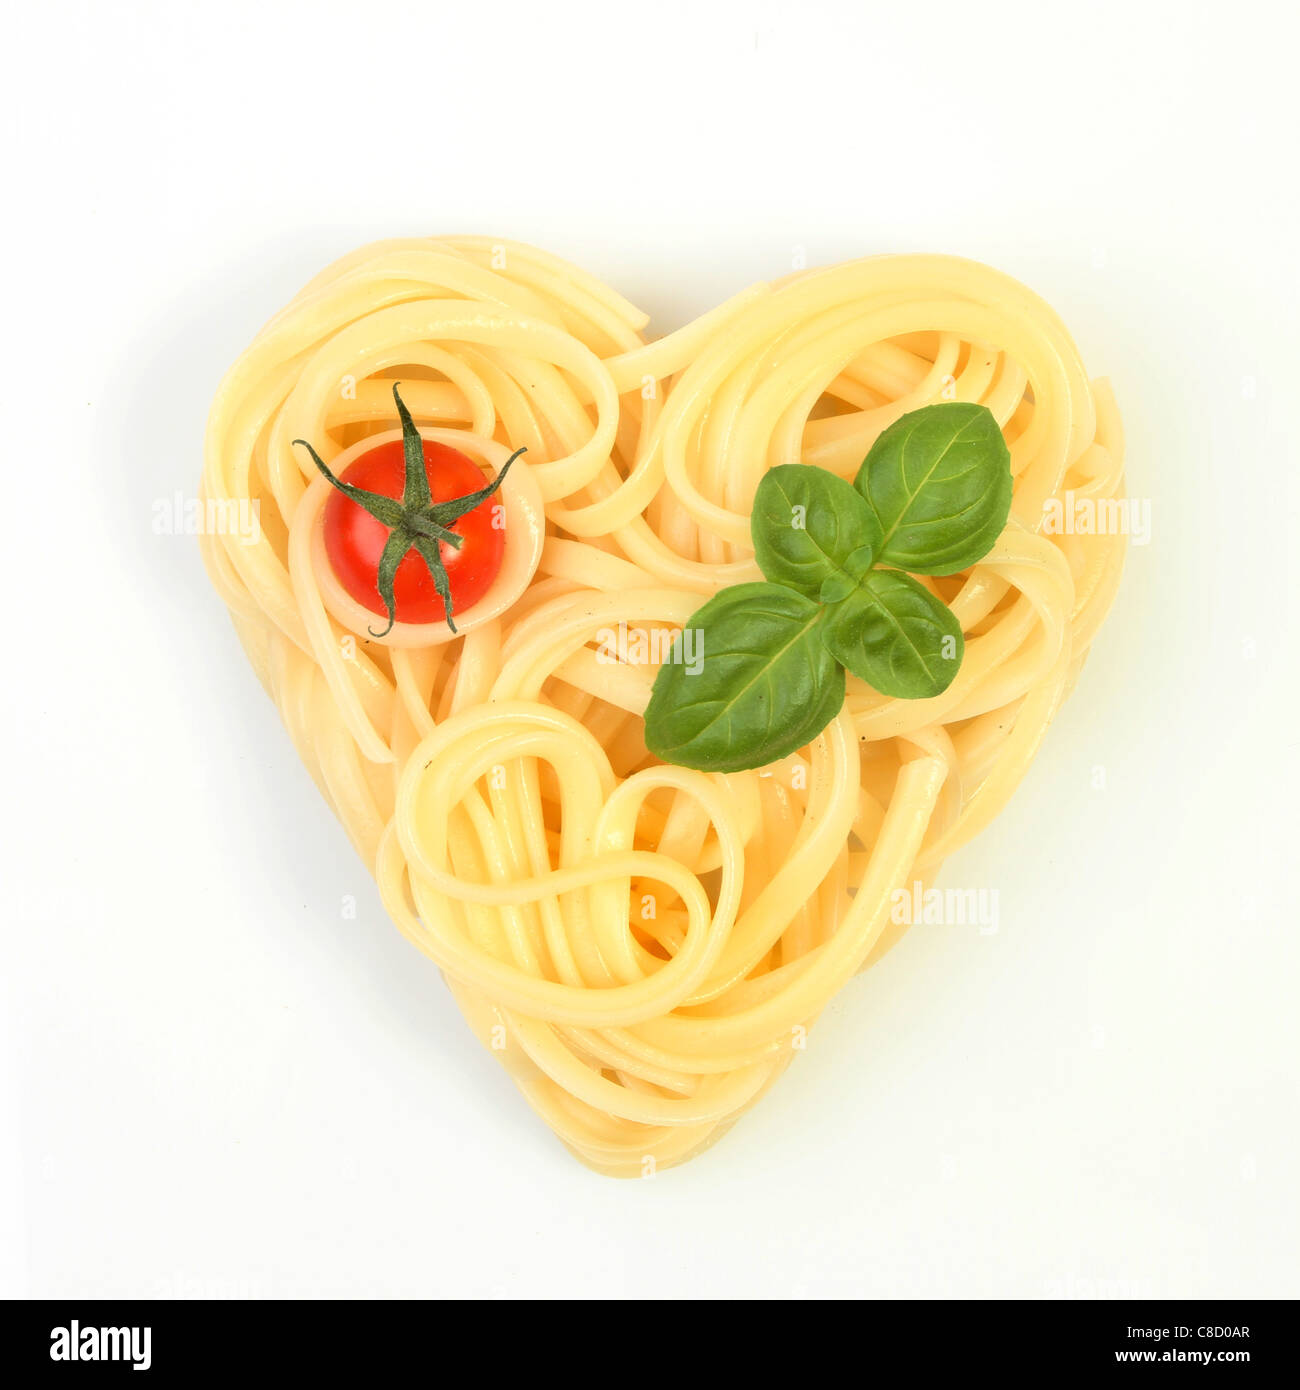 Gesunde Ernährung, Spaghetti in Form eines Herzens mit Tomaten und Basilikum auf weißem Hintergrund Stockfoto